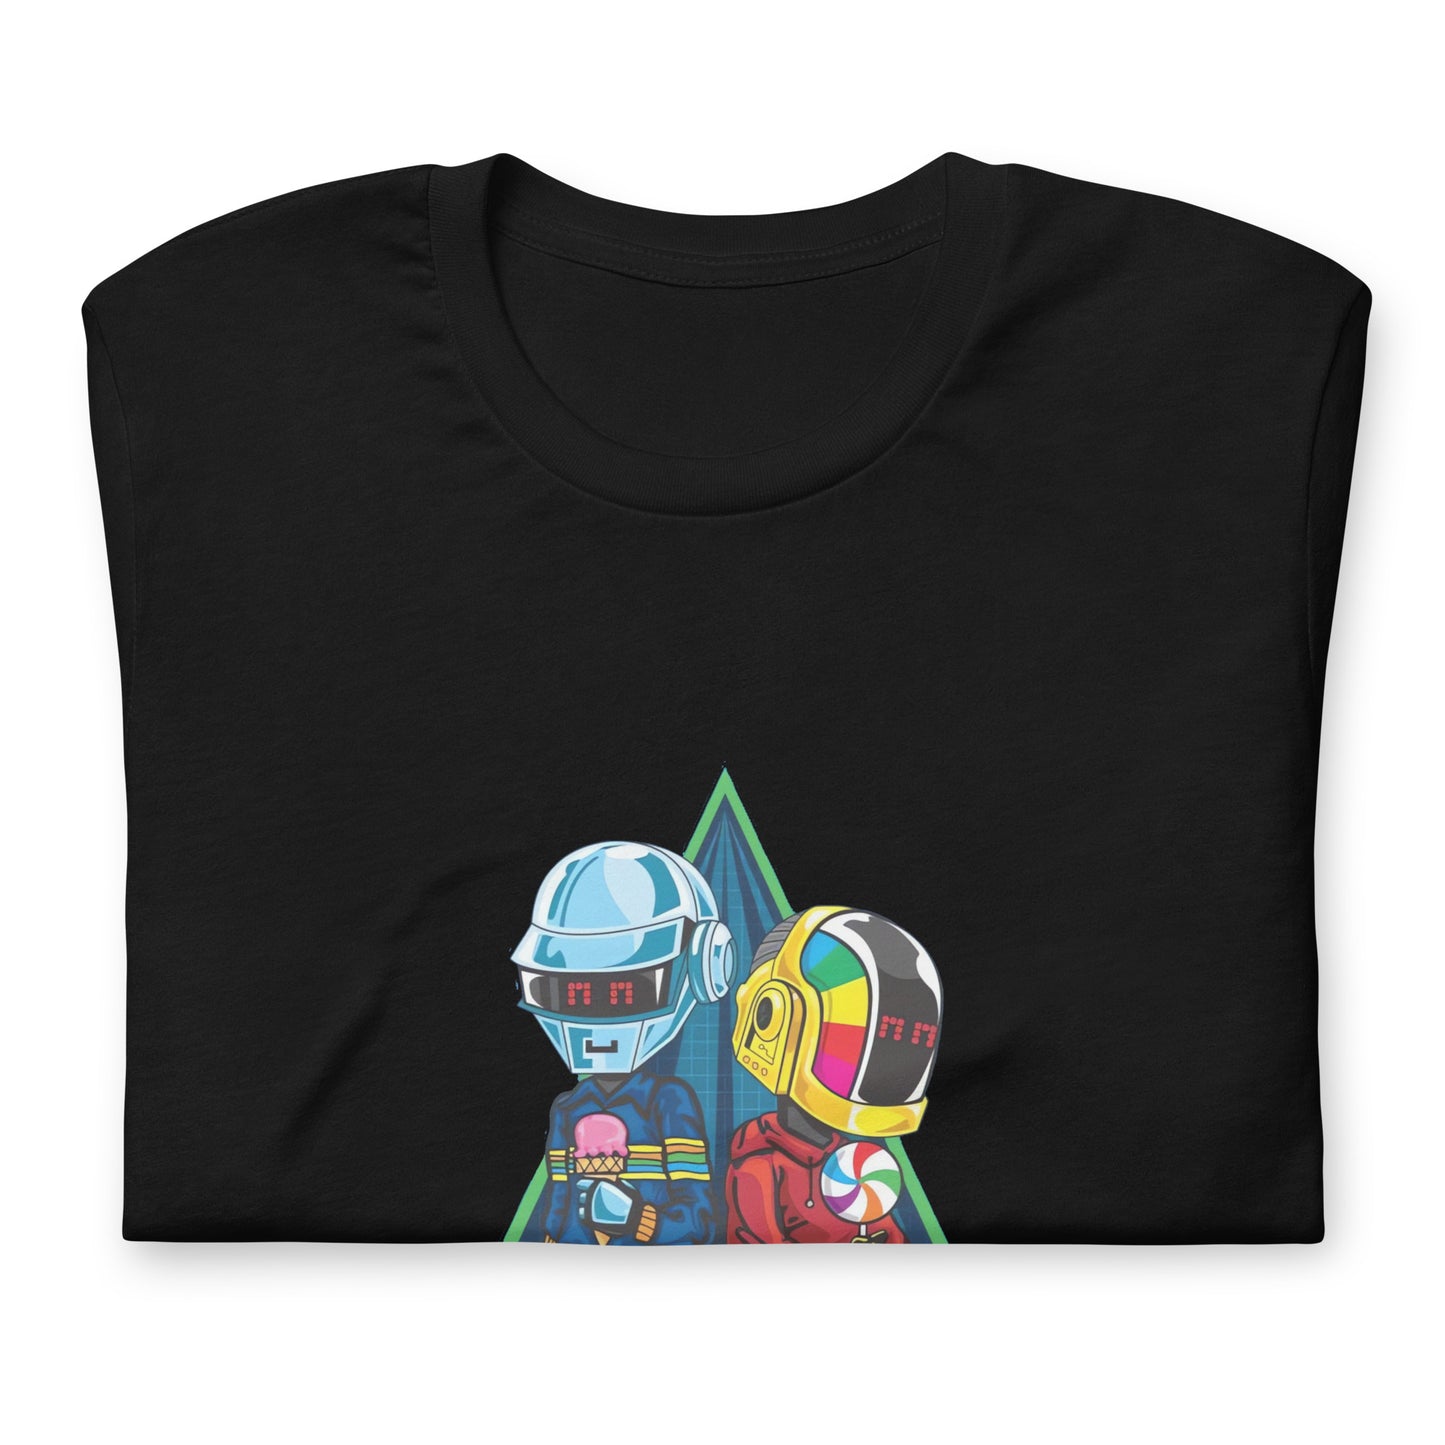 ¡Compra el mejor merchandising en Superstar! Encuentra diseños únicos y de alta calidad en playeras, Camiseta Daft Punk Robots